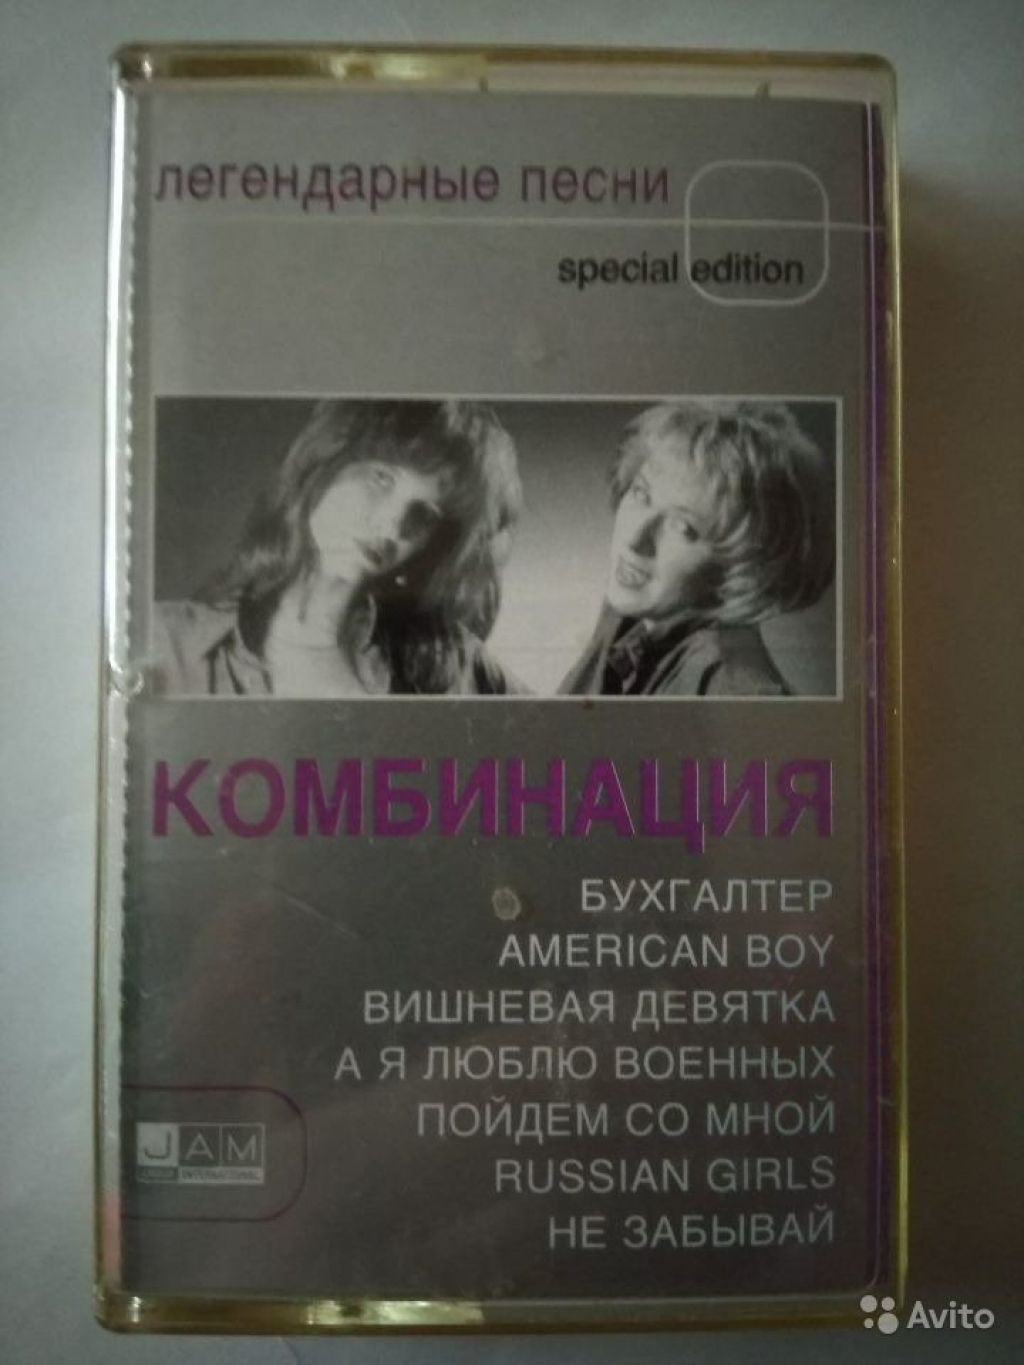 Аудиокассета Комбинация.Легендарные песни в Москве. Фото 1